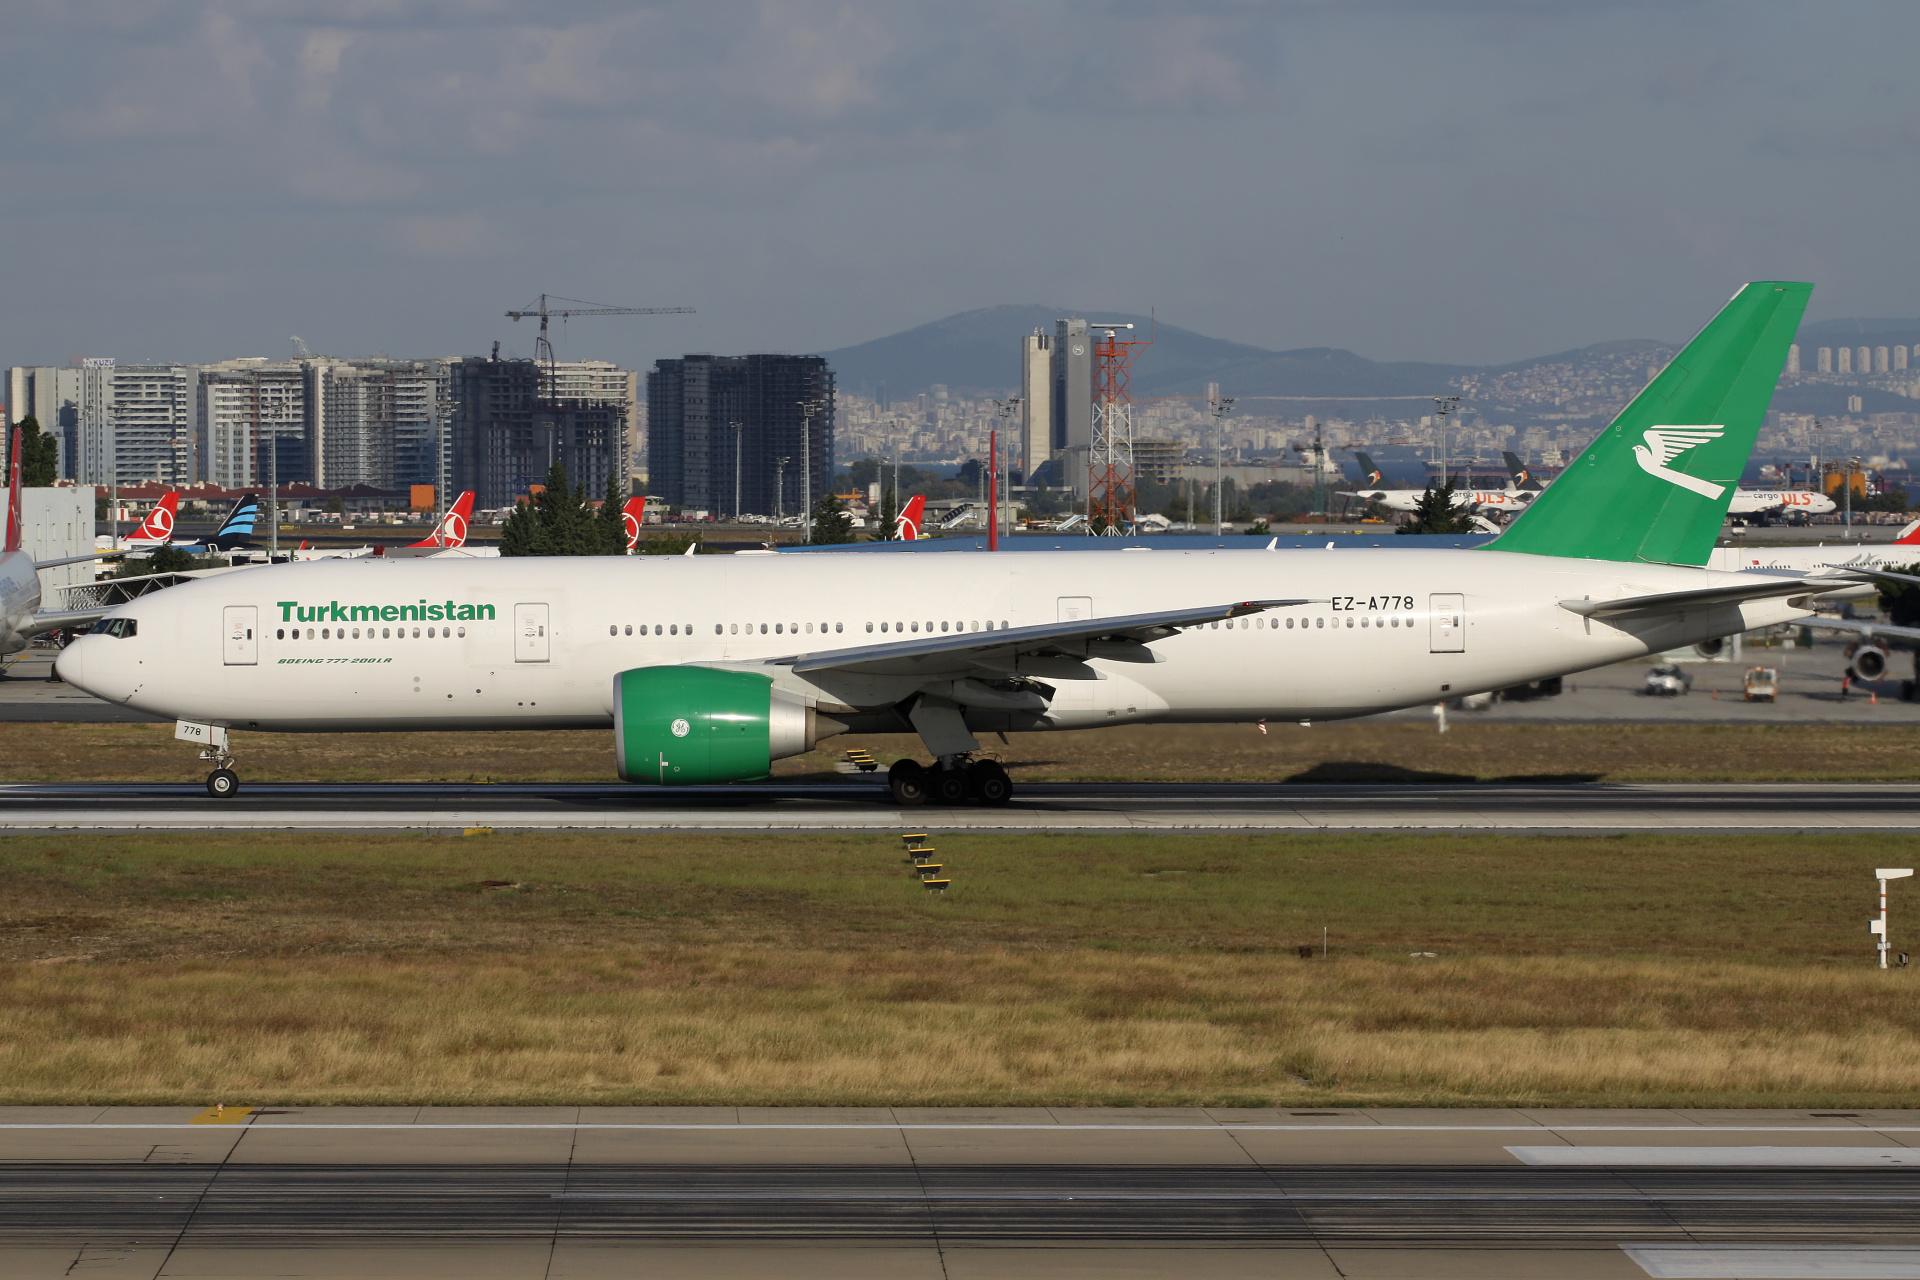 EZ-A778, Turkmenistan Airlines (Samoloty » Port Lotniczy im. Atatürka w Stambule » Boeing 777-200LR)